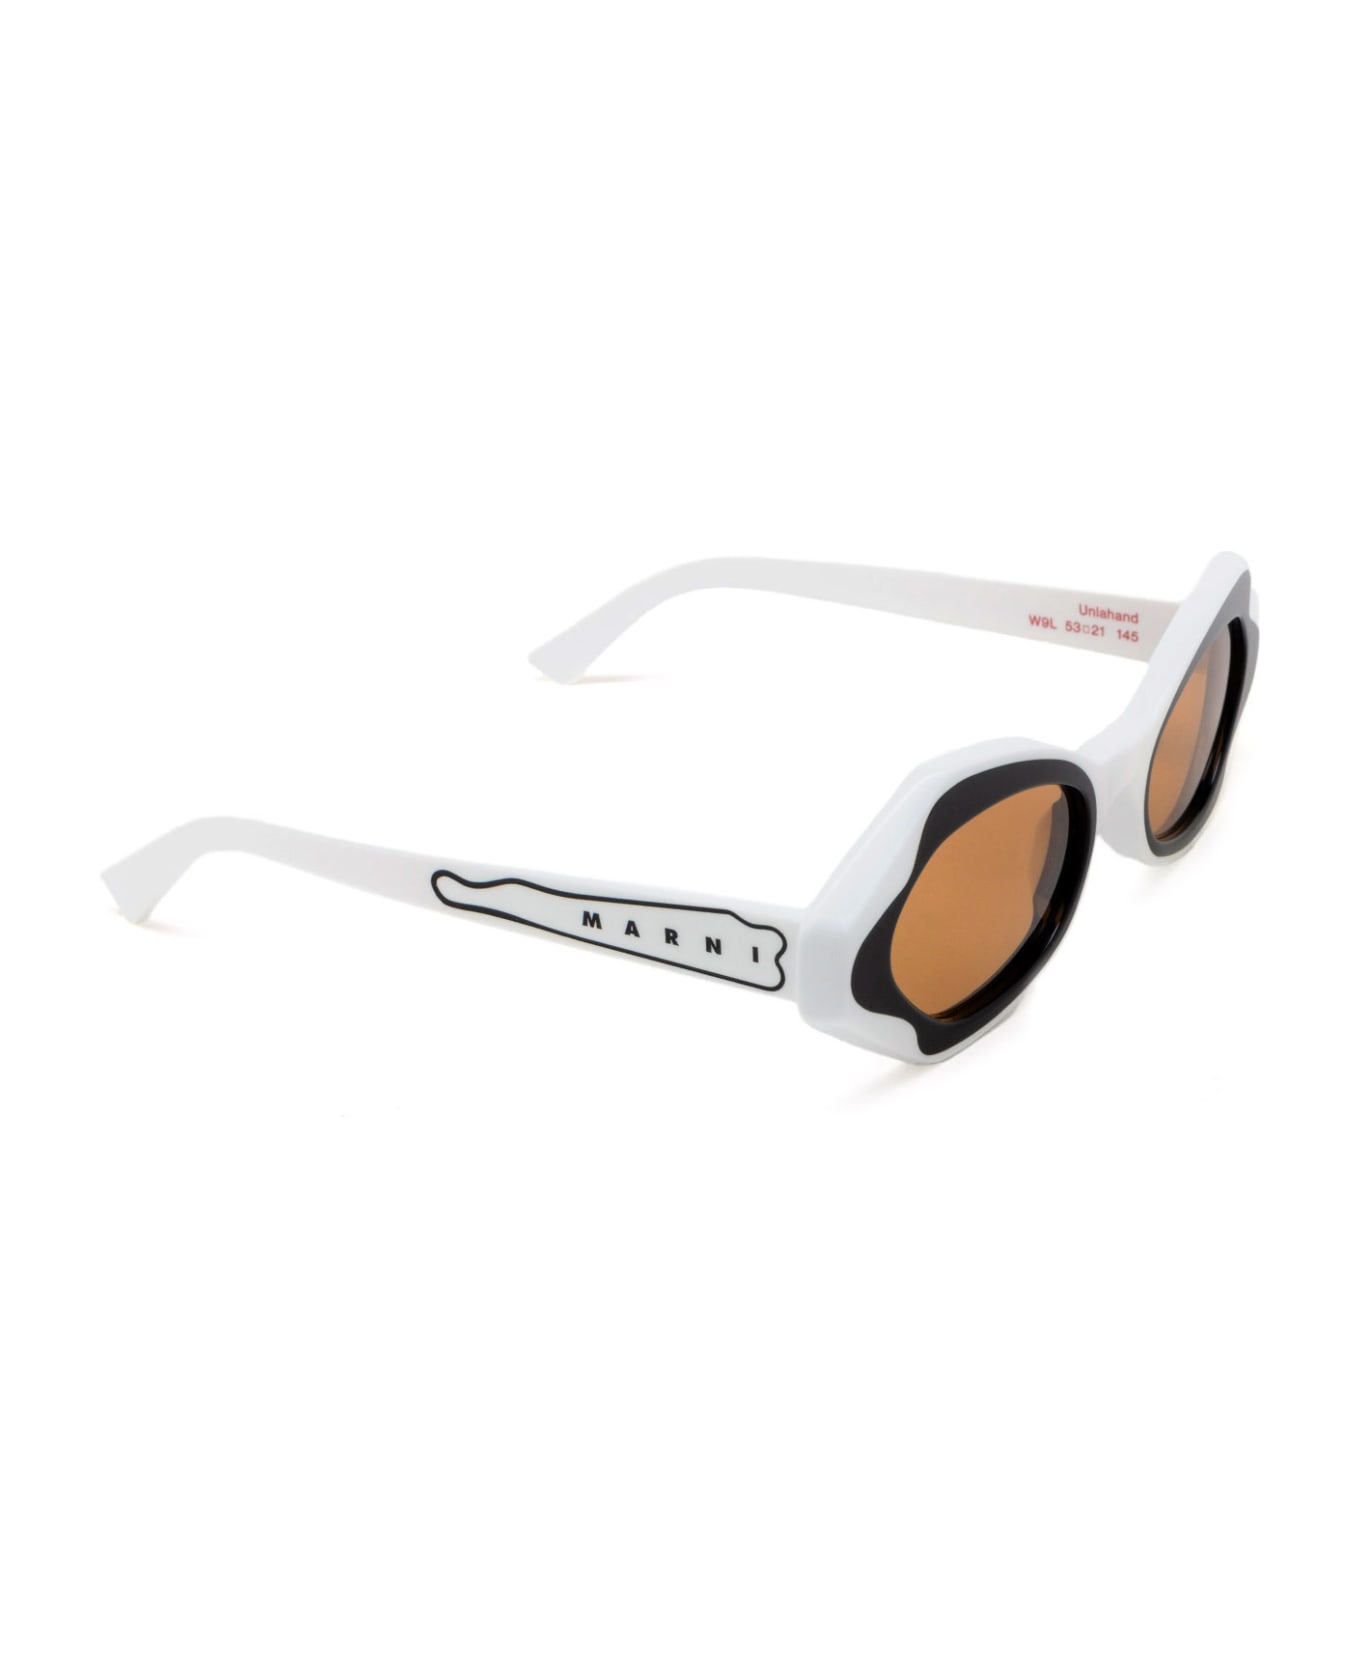 Marni Eyewear Unlahand White Sunglasses - White サングラス